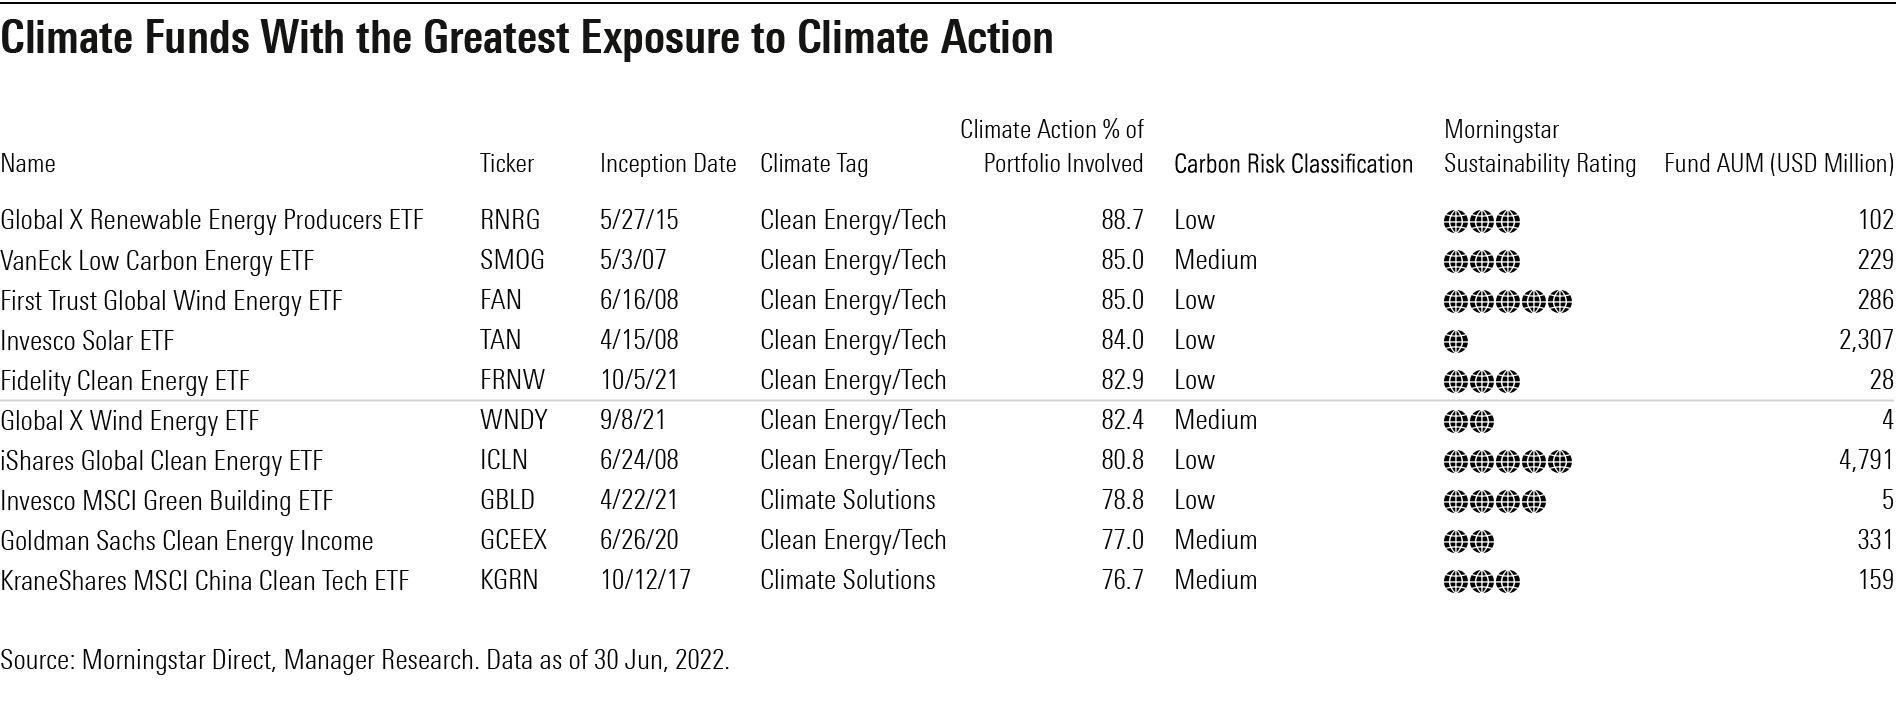 表显示了在暴露于气候行动方面的十大气候资金。